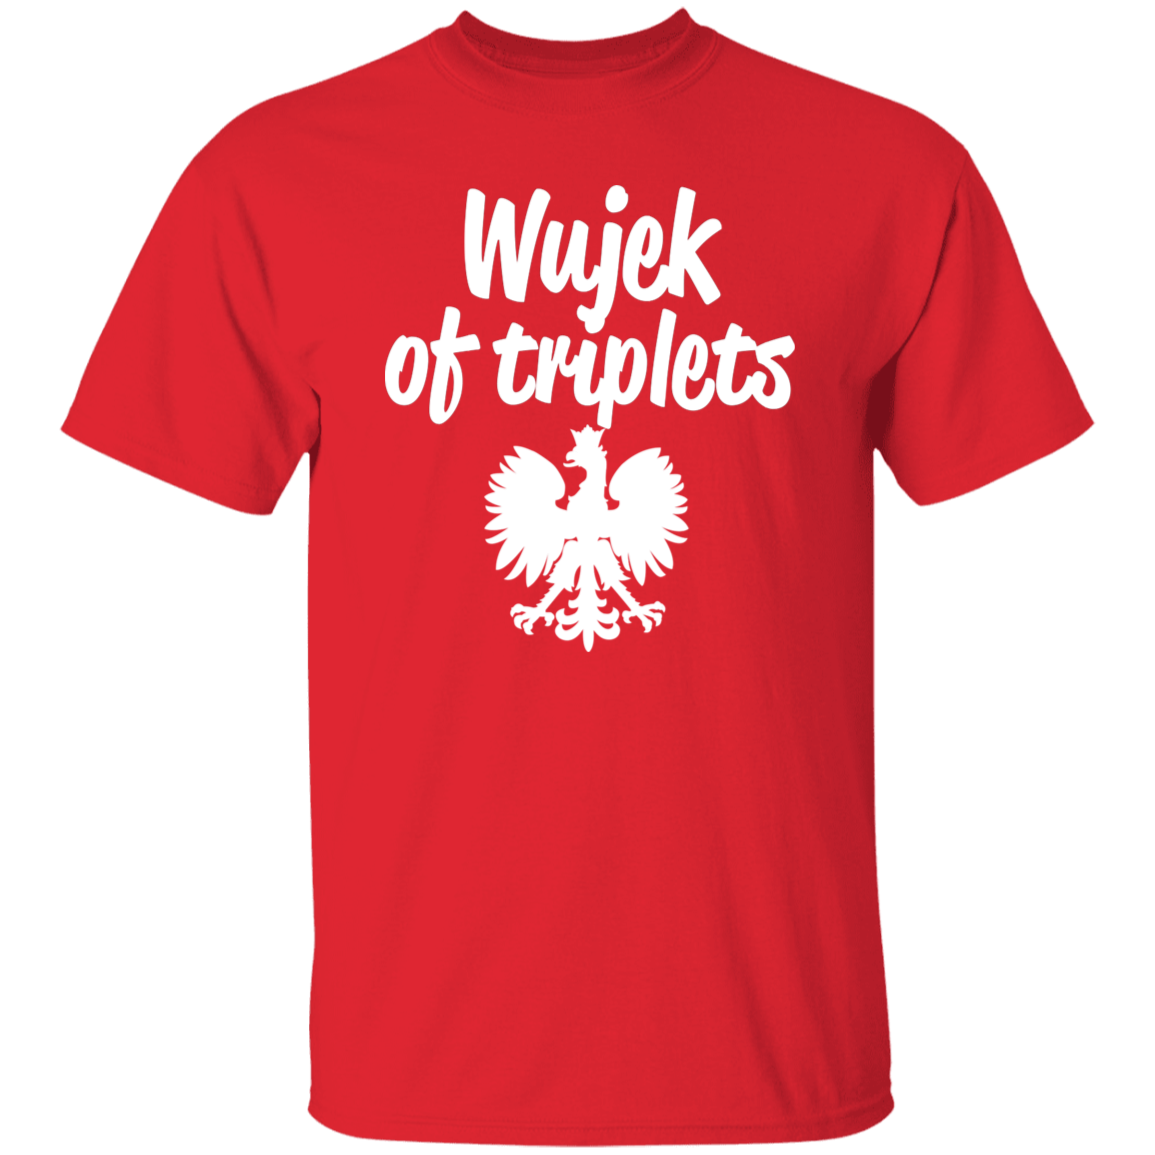 Wujek of Triplets Apparel CustomCat G500 5.3 oz. T-Shirt Red S